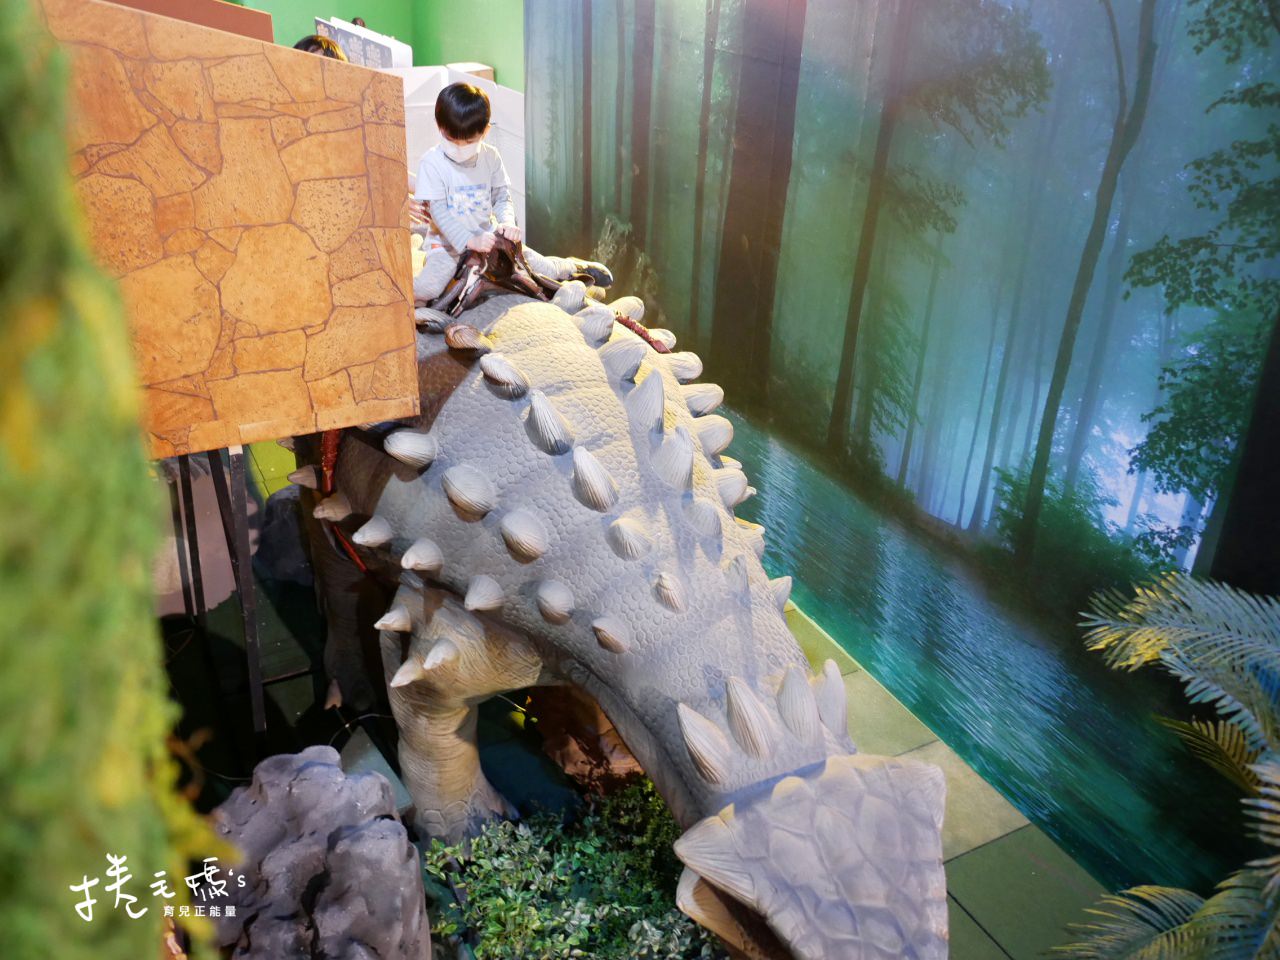 恐龍展 侏儸紀 恐龍 展覽 春節出遊 親子行程 雨天備案P1110759